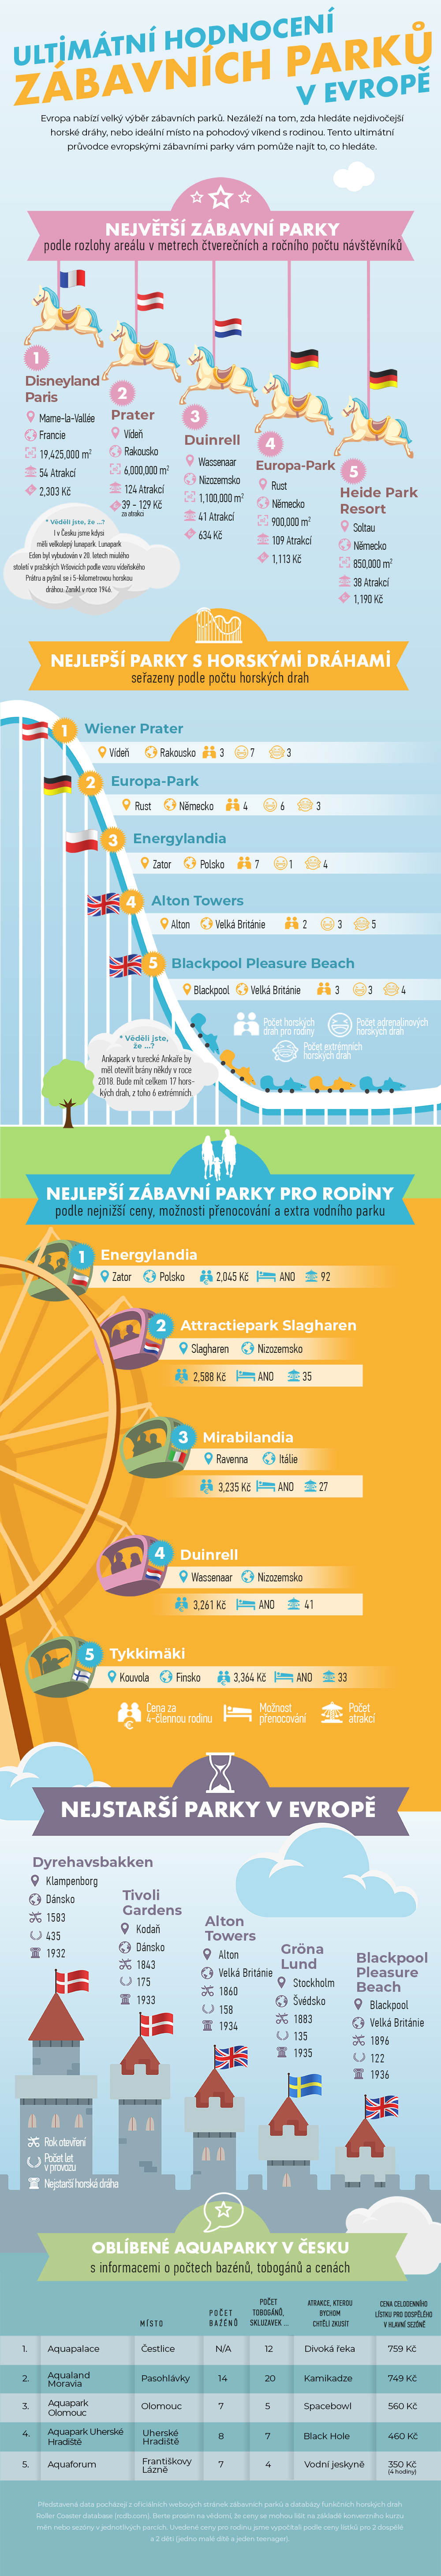 Ultimátní hodnocení zábavních parků v Evropě - infografika ShopAlike